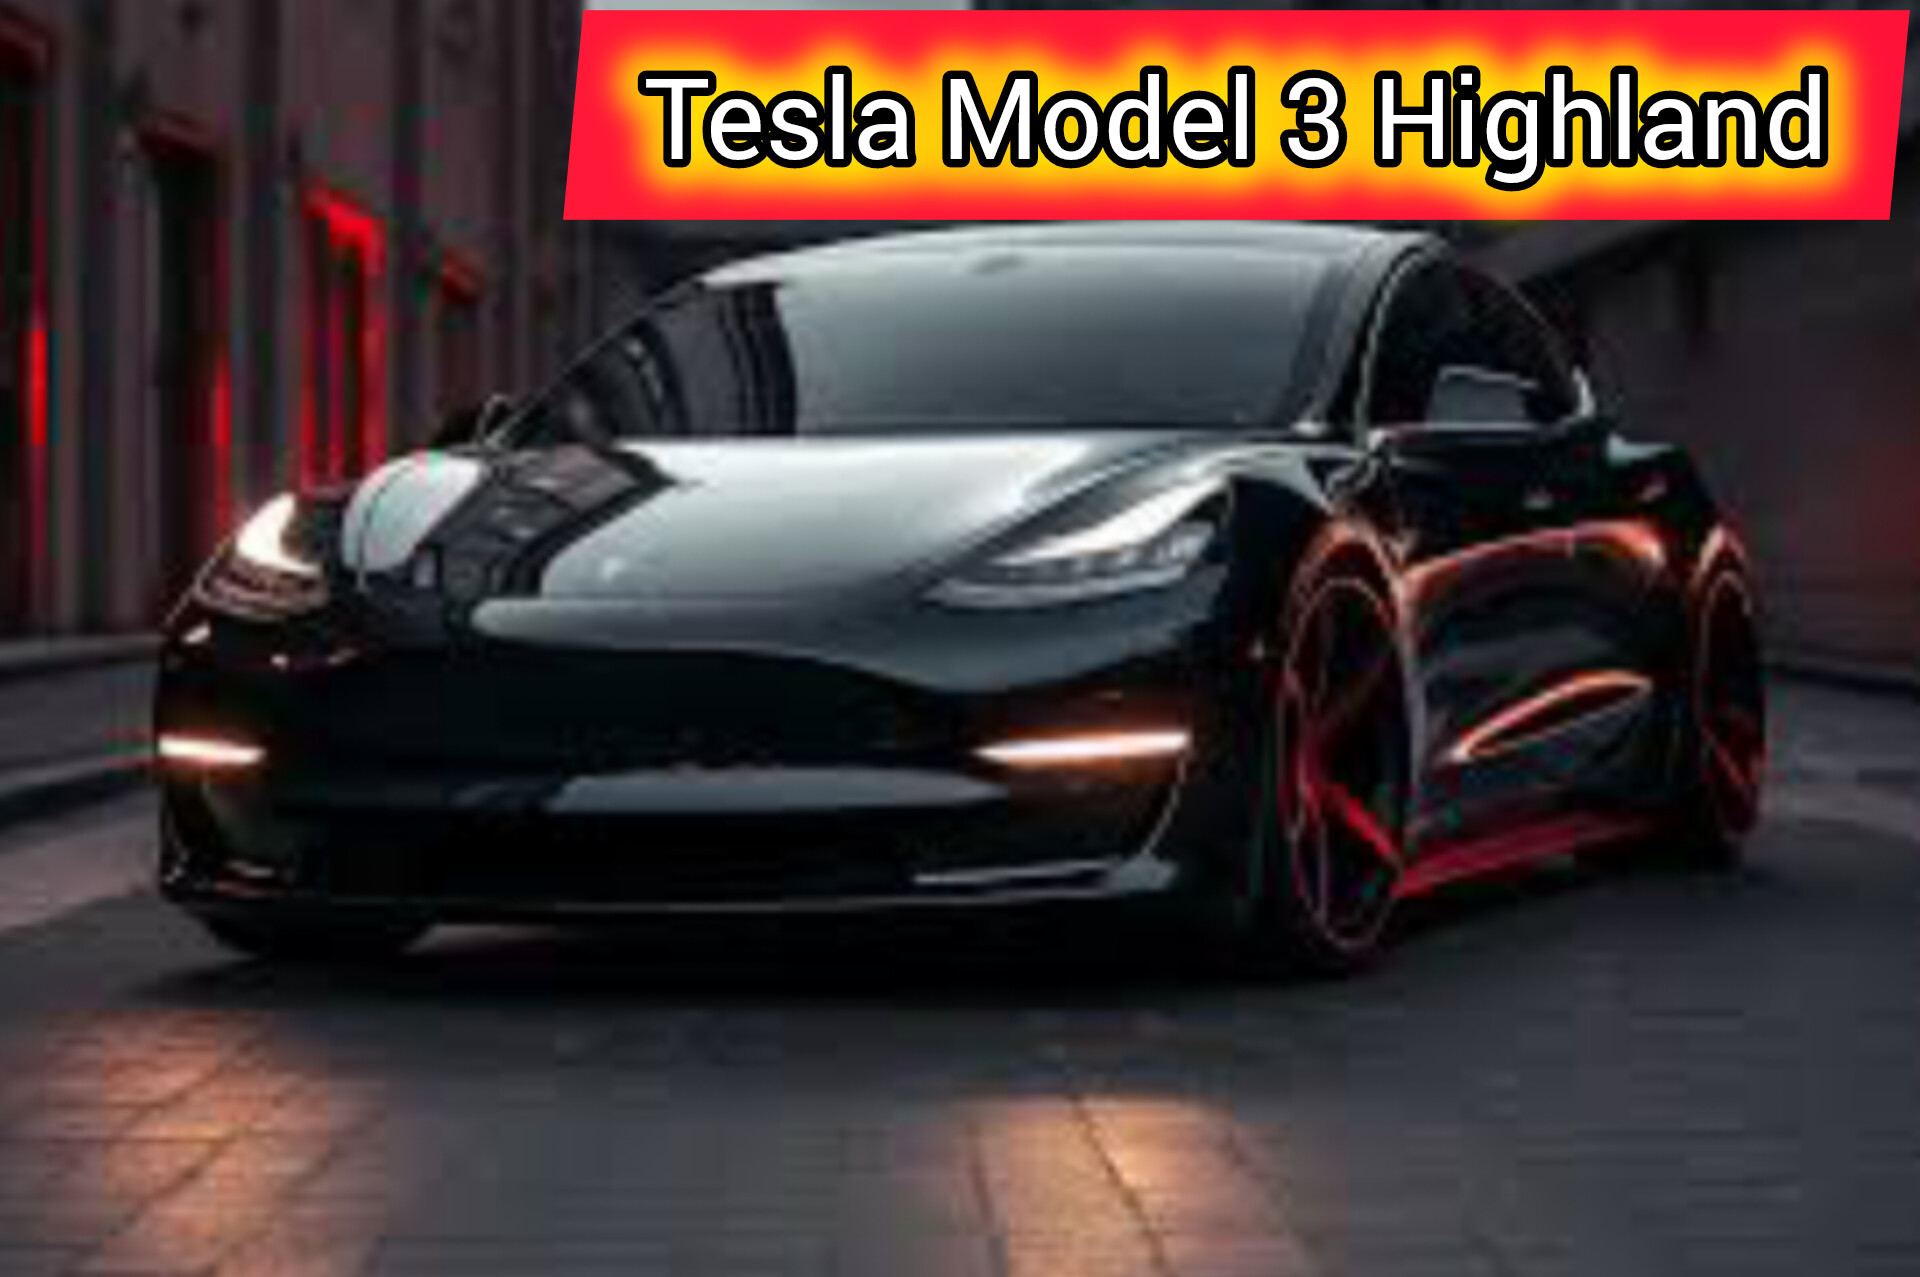 Teknologi dan Performa Tesla Model 3 Highland Guncang Pasar Mobil Listrik Indonesia